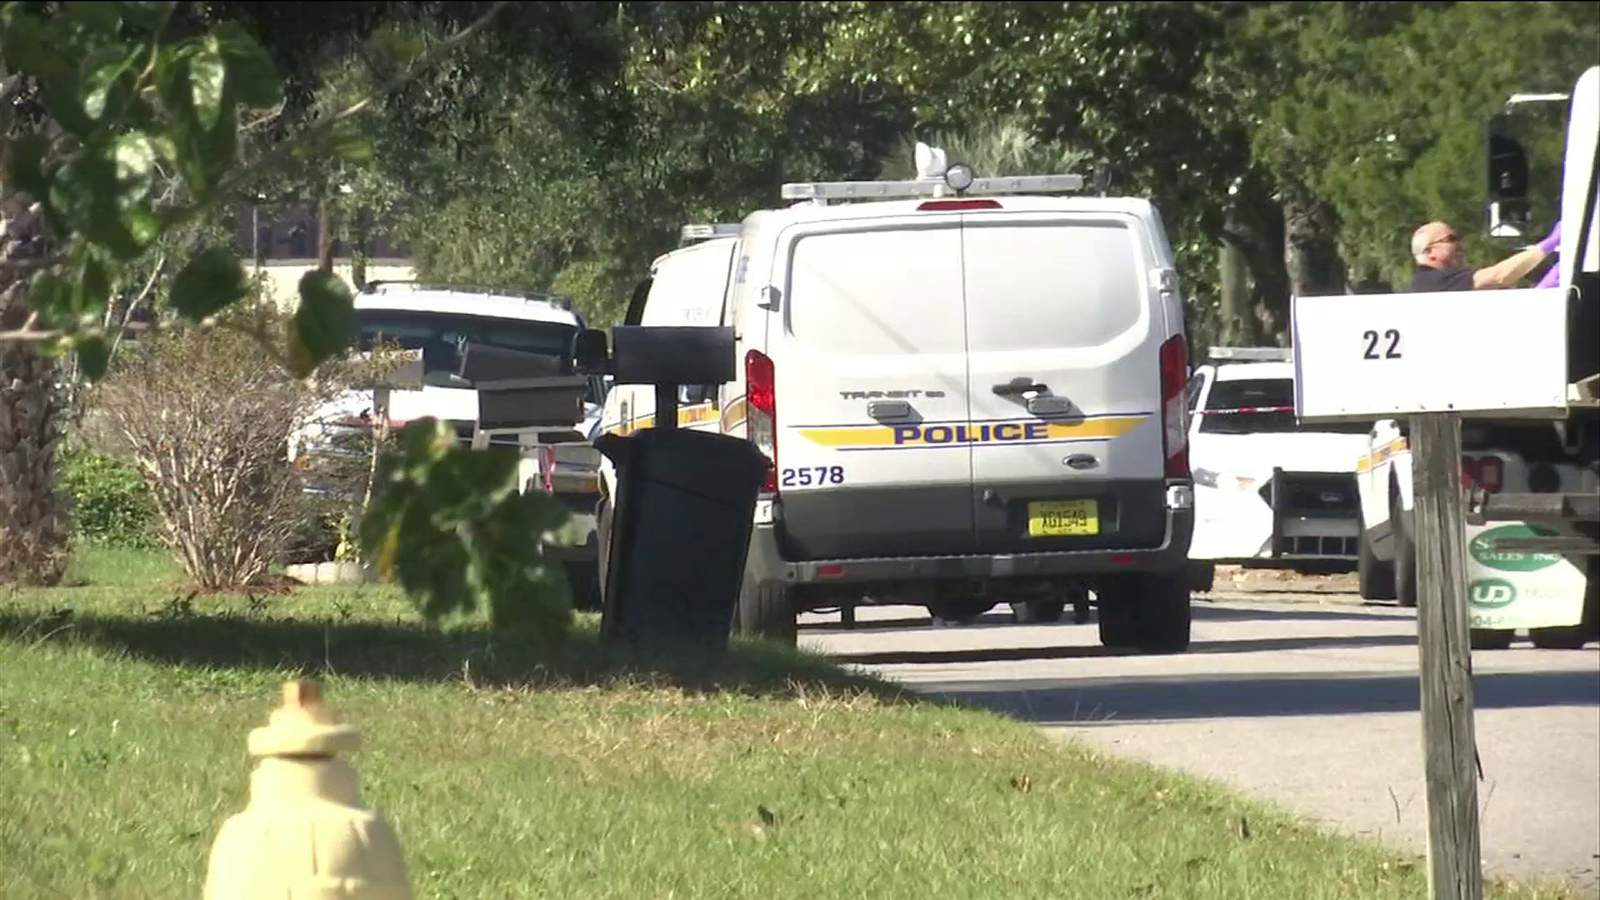 Man found dead of gunshot in SUV in Brentwood